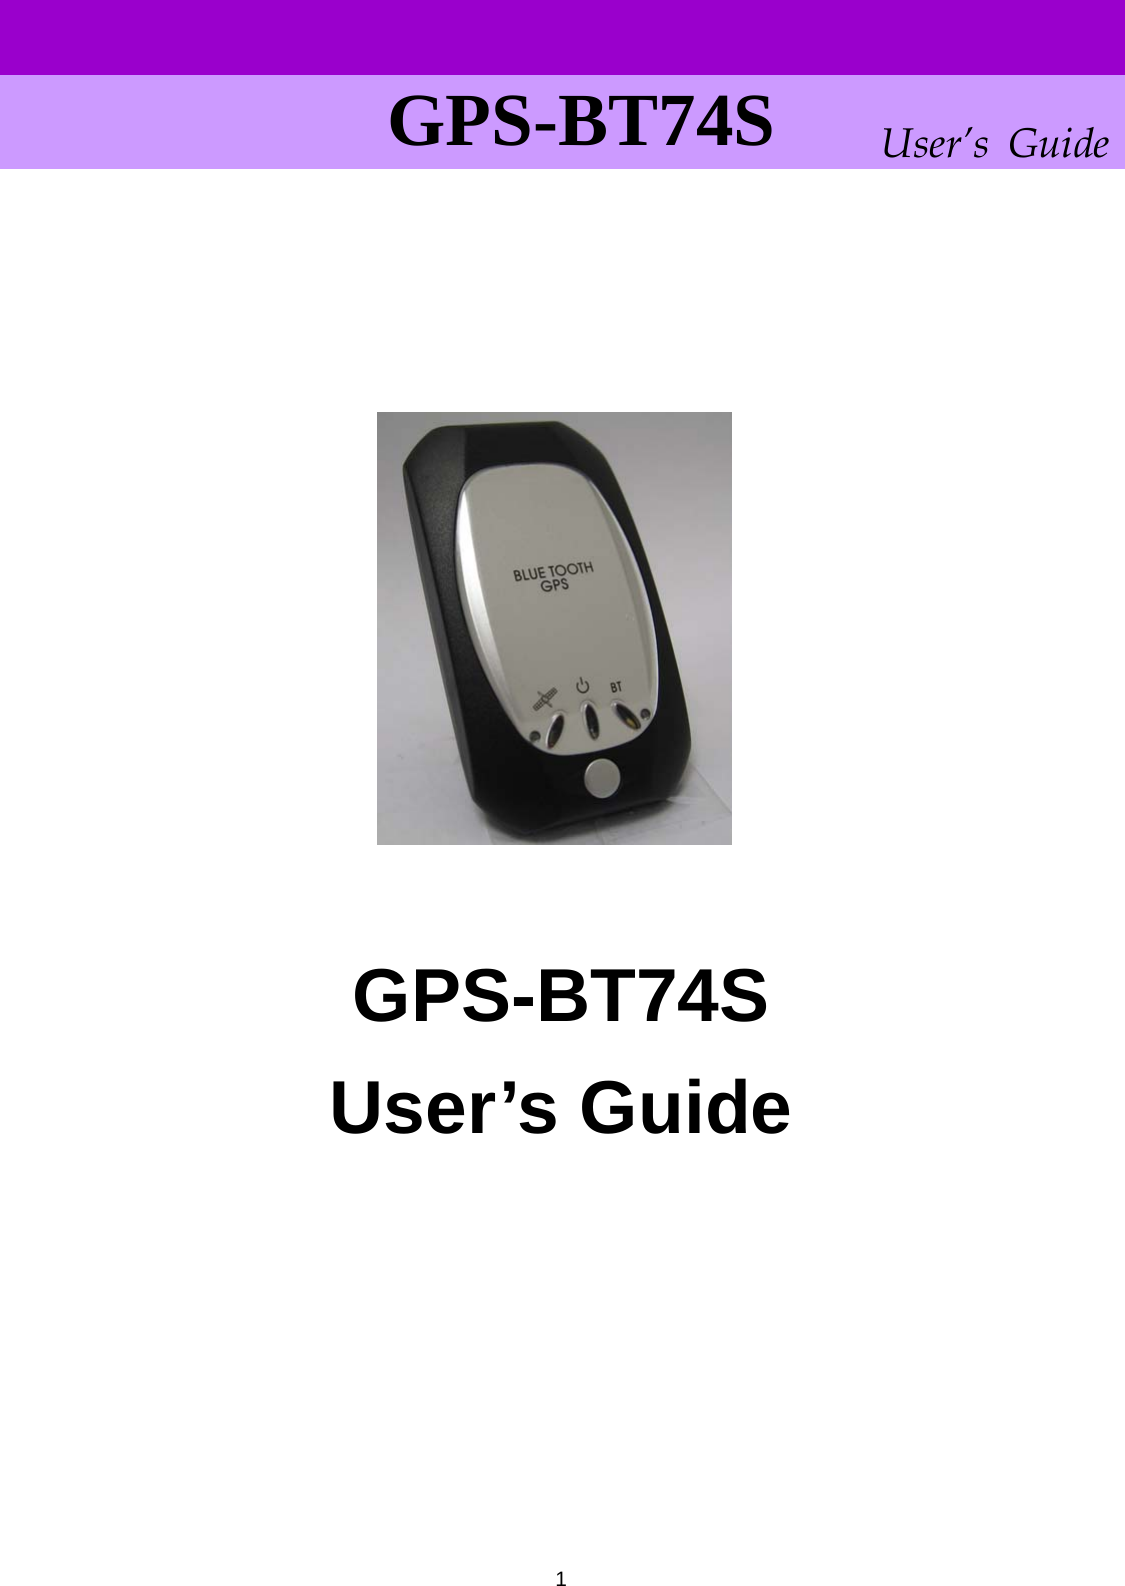      User’s GuideGPS-BT74S                    GPS-BT74S User’s Guide            1